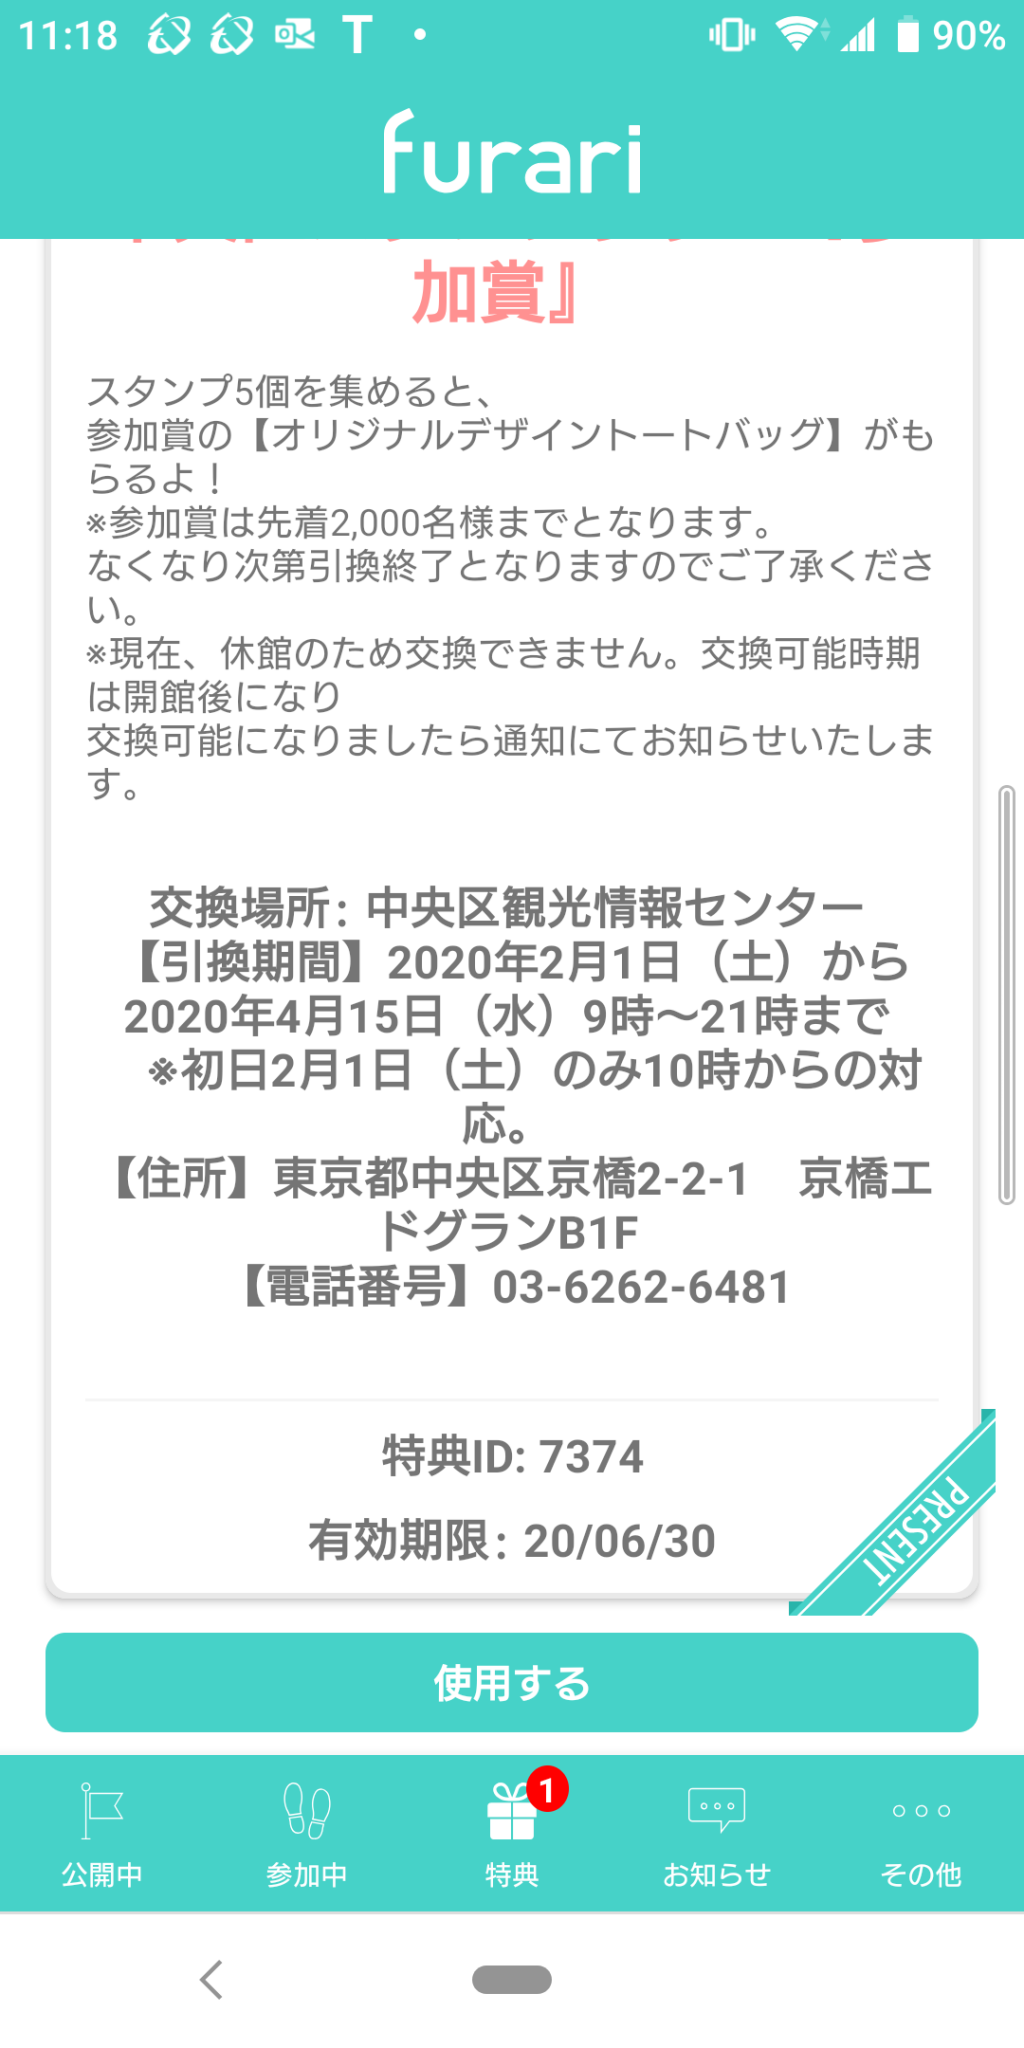 スタンプラリー用アプリ「furari」を確認すると・・・！ 「中央区スタンプラリー」賞品は６月３０日まで引き換え可能です！！！